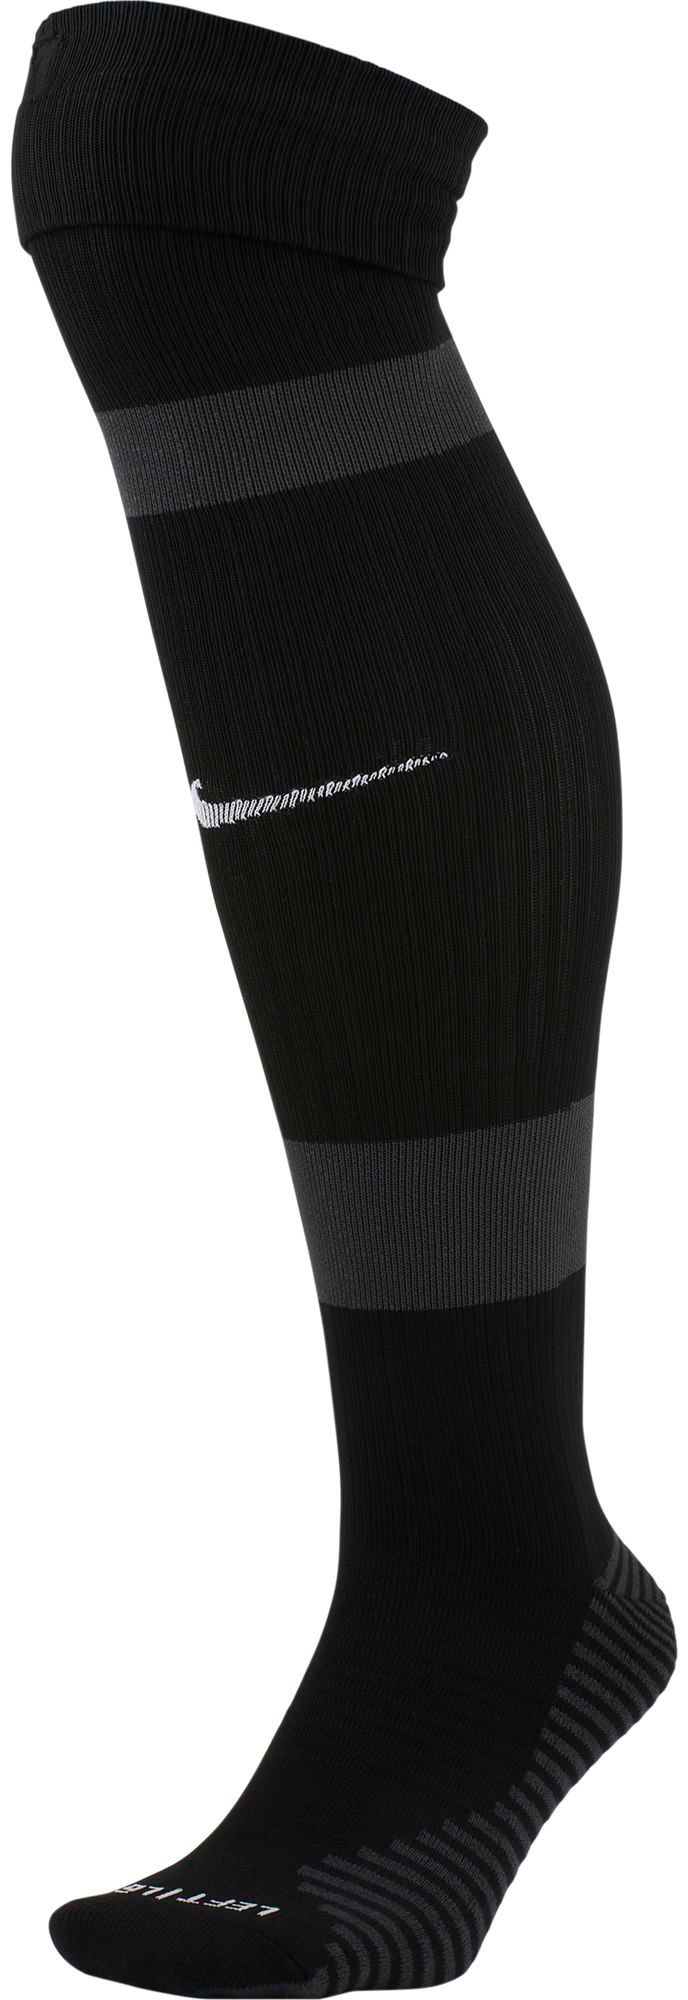 Nike MatchFit Knee-High Soccer Socks 